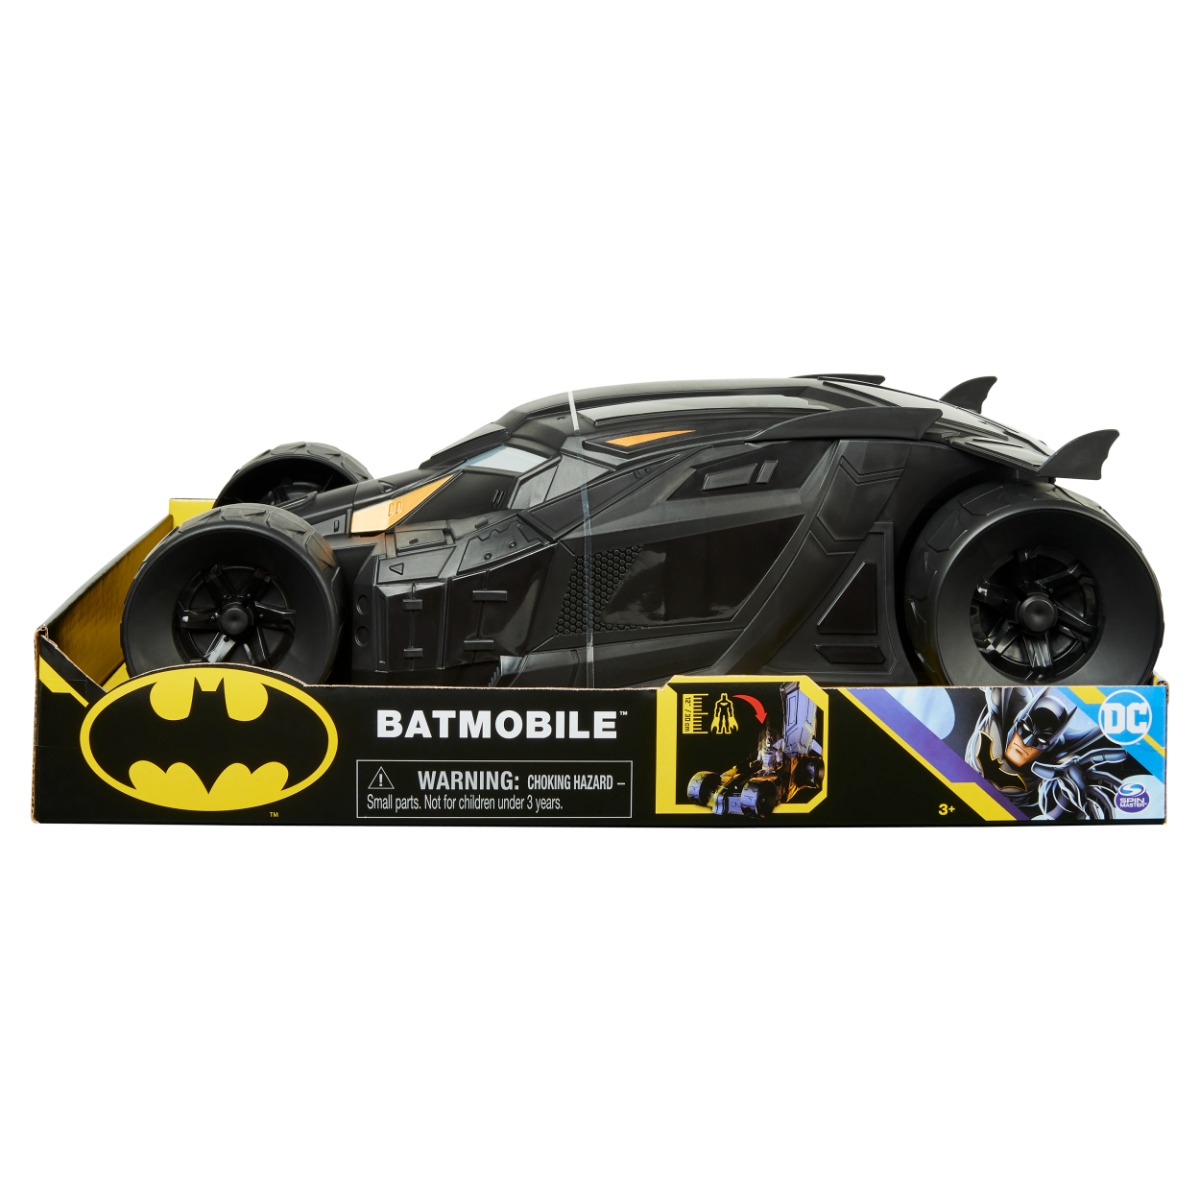 Masina lui Batman, DC Universe, Batmobile Batman imagine noua